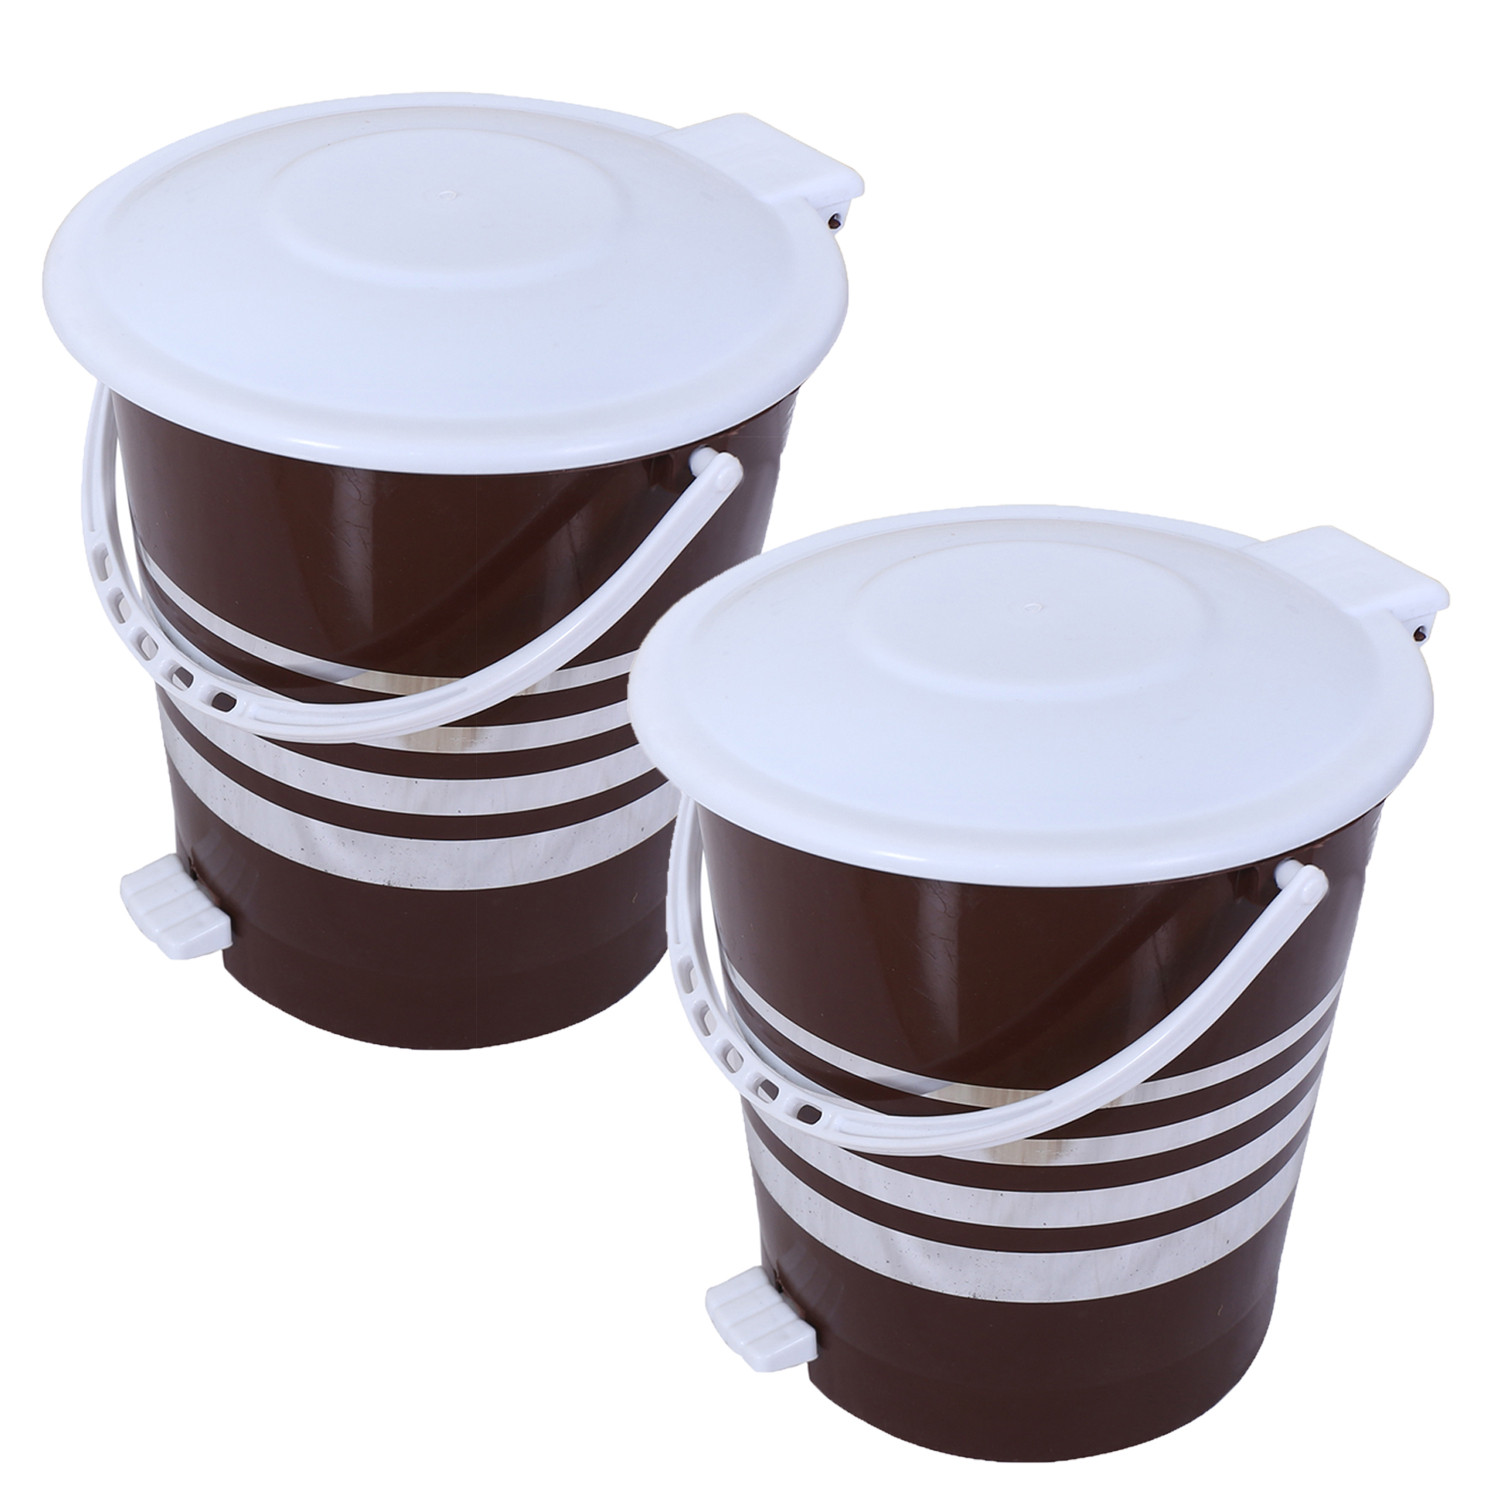 Kuber Industries Dustbin|Plastic Pedal Dustbin|Kitchen Inner Bucket Waste Paper Bin|Dustbin For Bedroom|Silver Layer 10 Litre Dustbin (Brown)